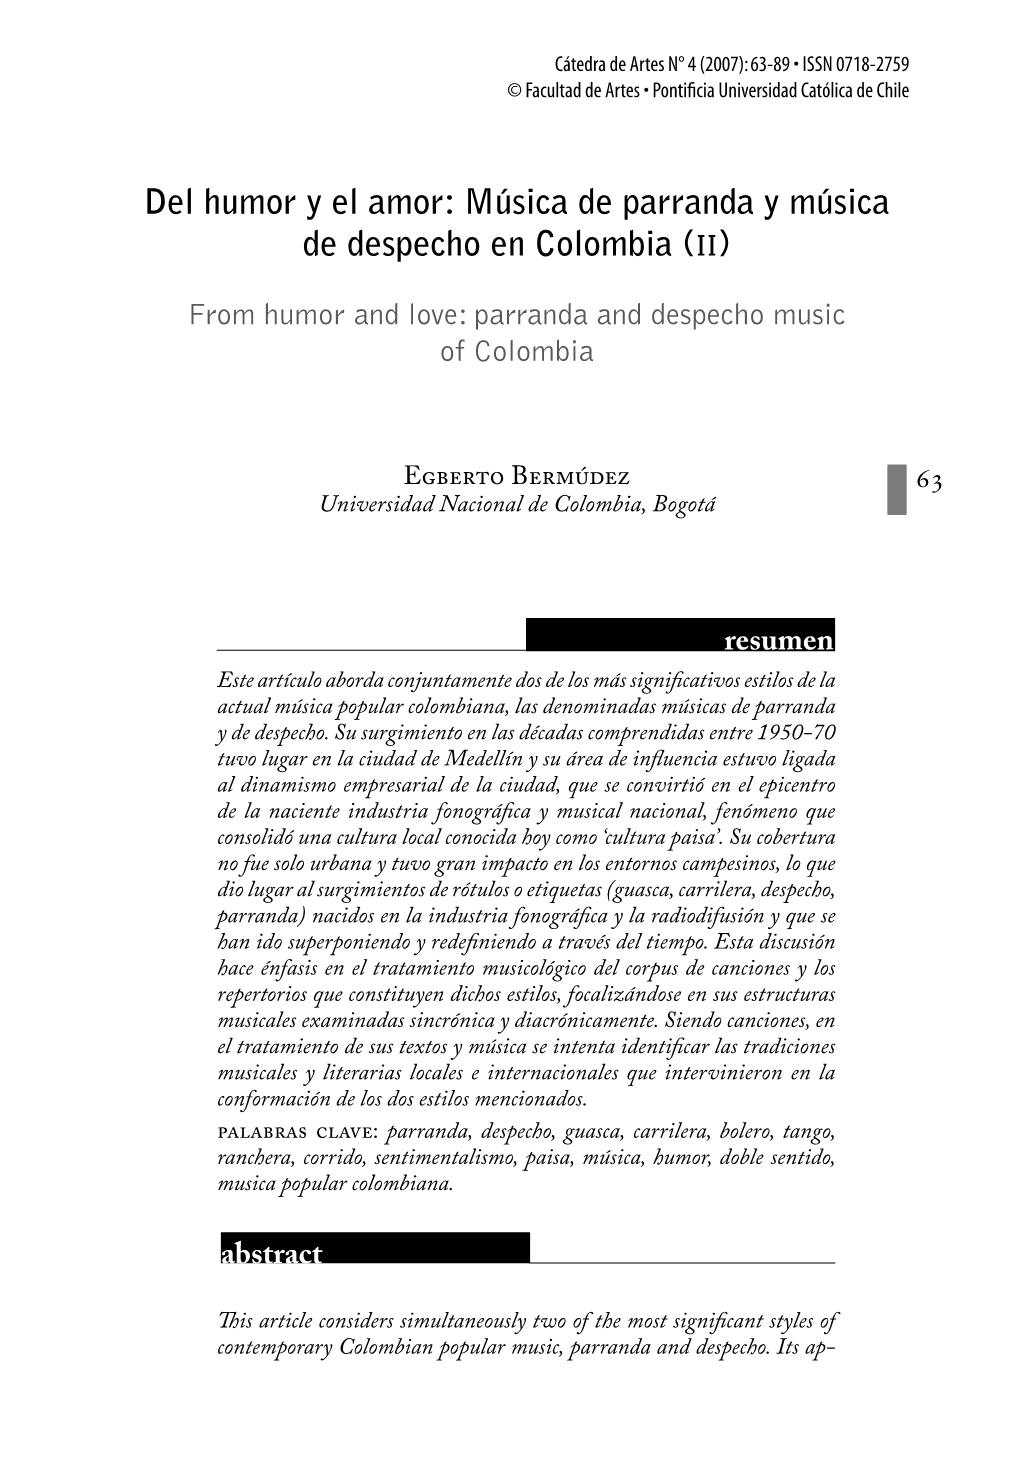 Del Humor Y El Amor: Música De Parranda Y Música De Despecho En Colombia (II)